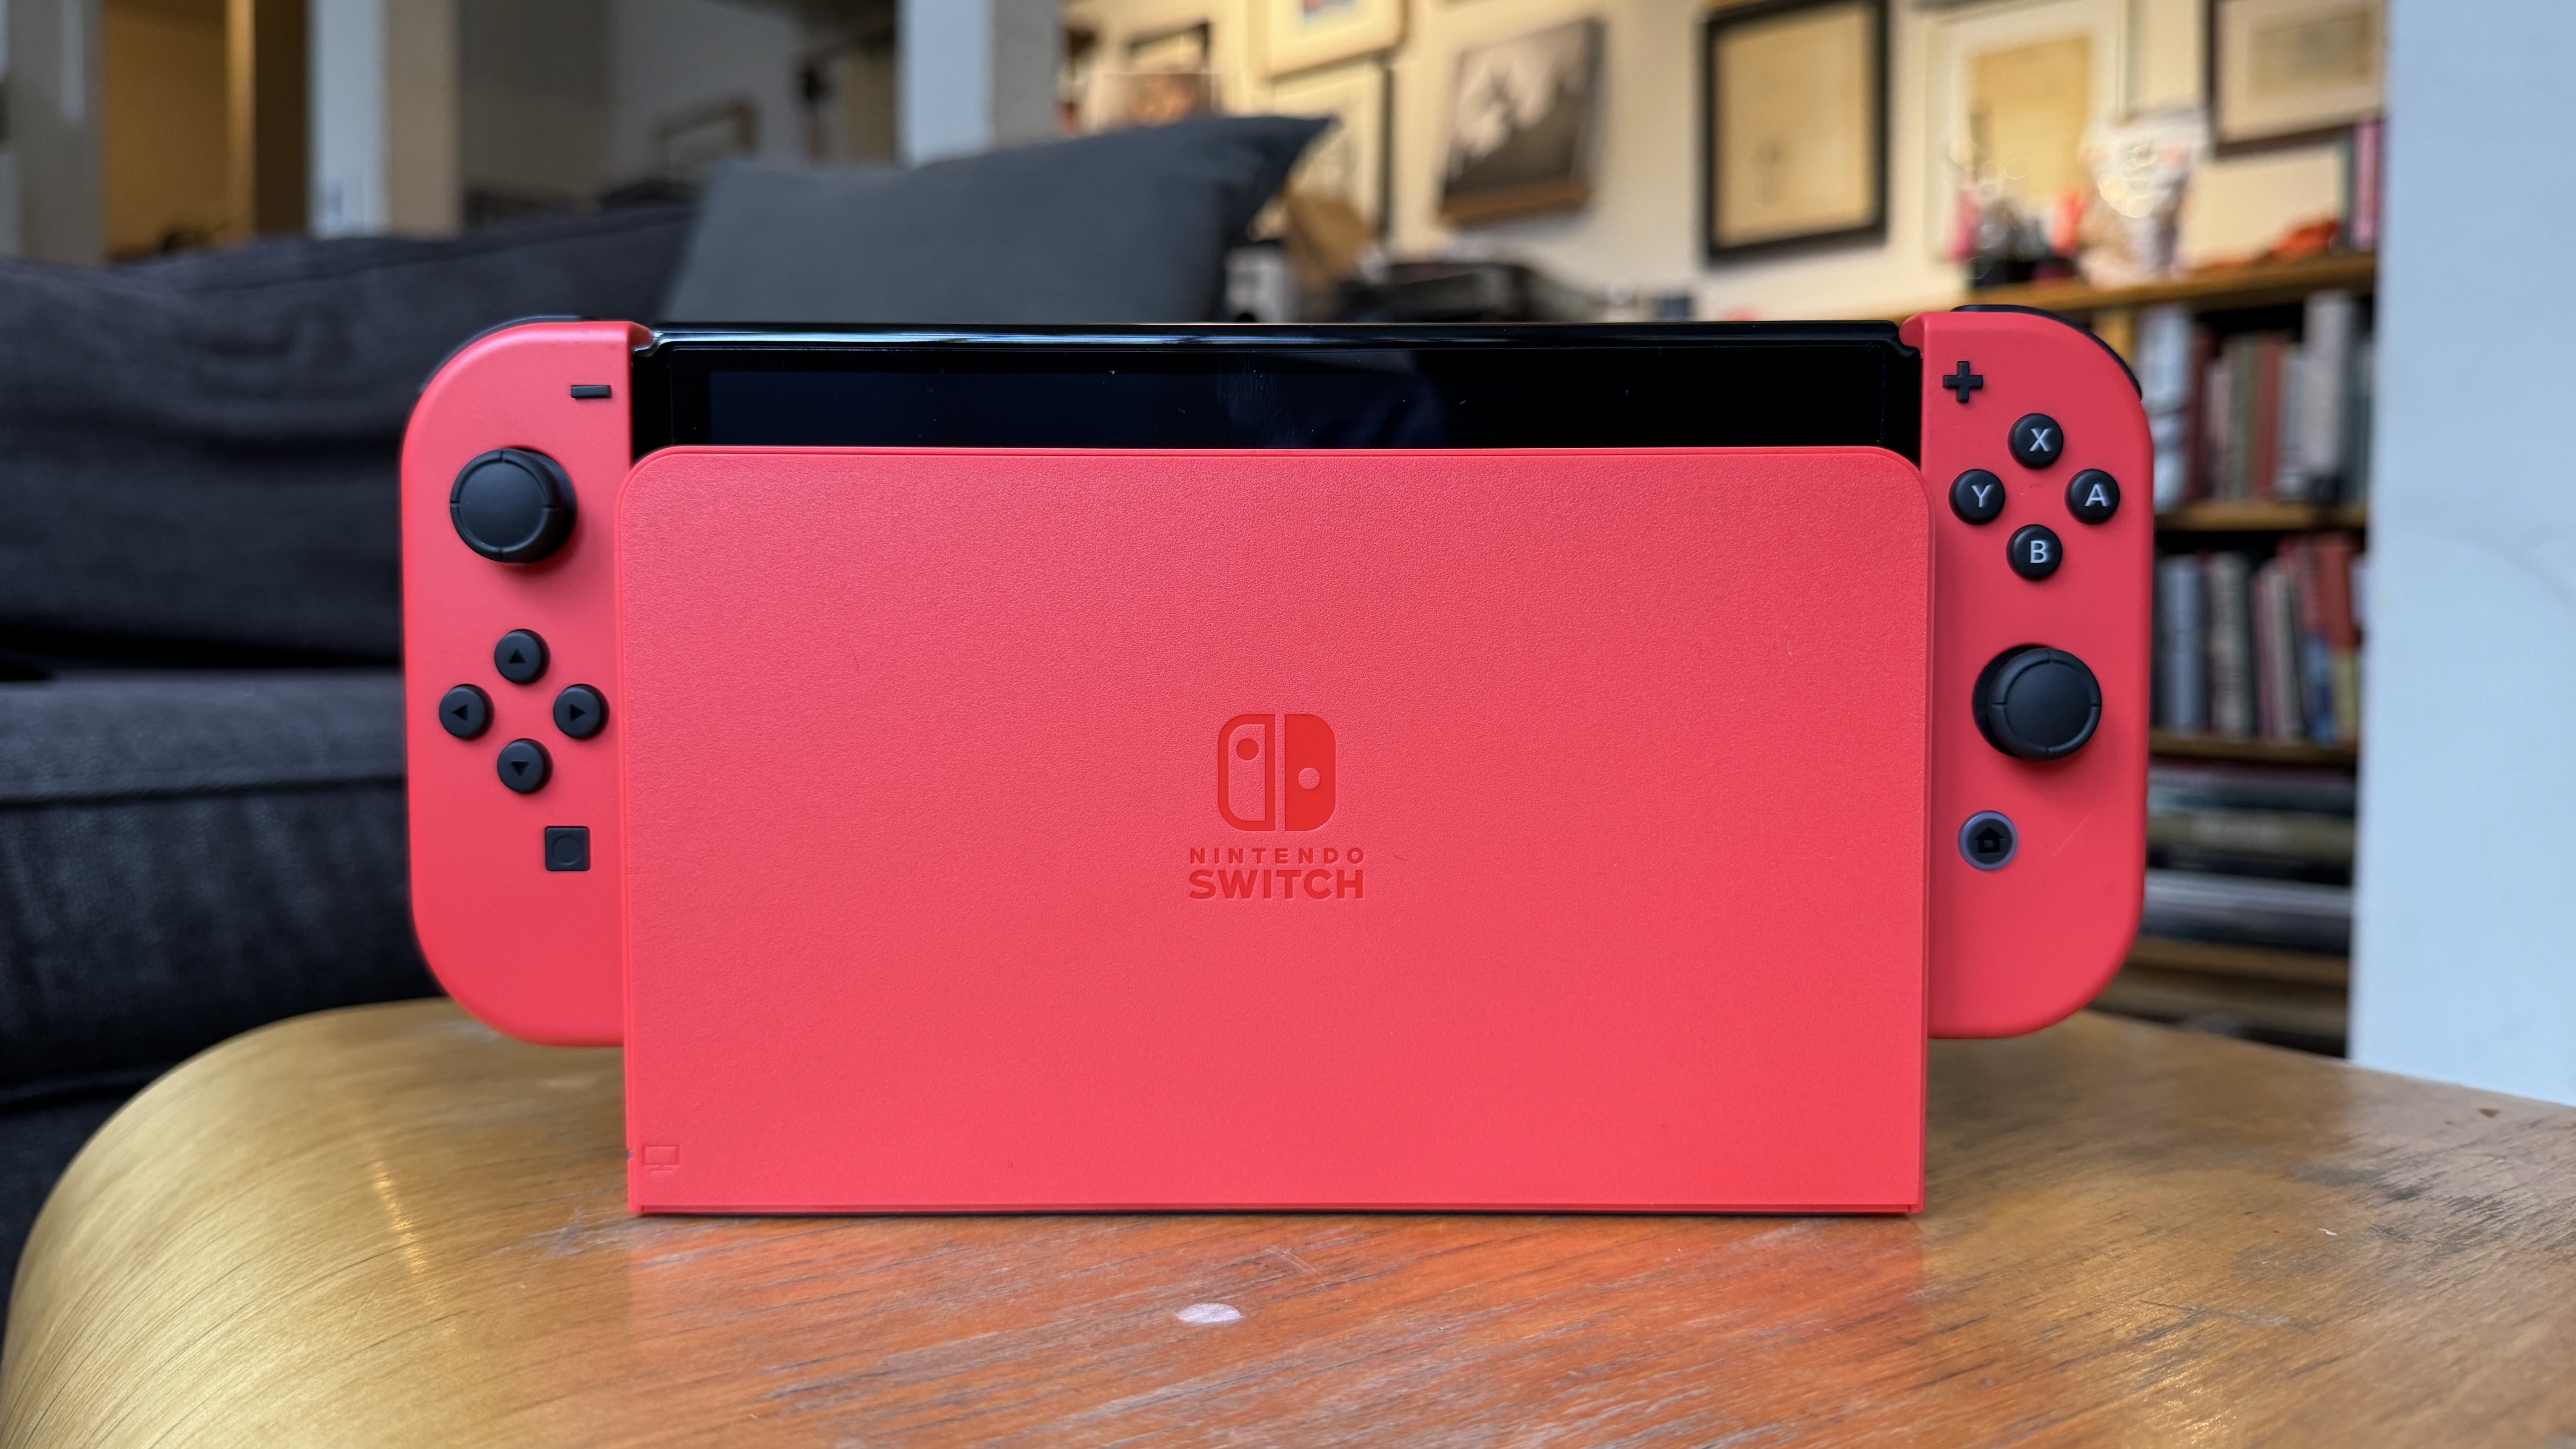 oud Achteruit Schijn The new Mario Red Nintendo Switch OLED: We went hands-on | CNN Underscored